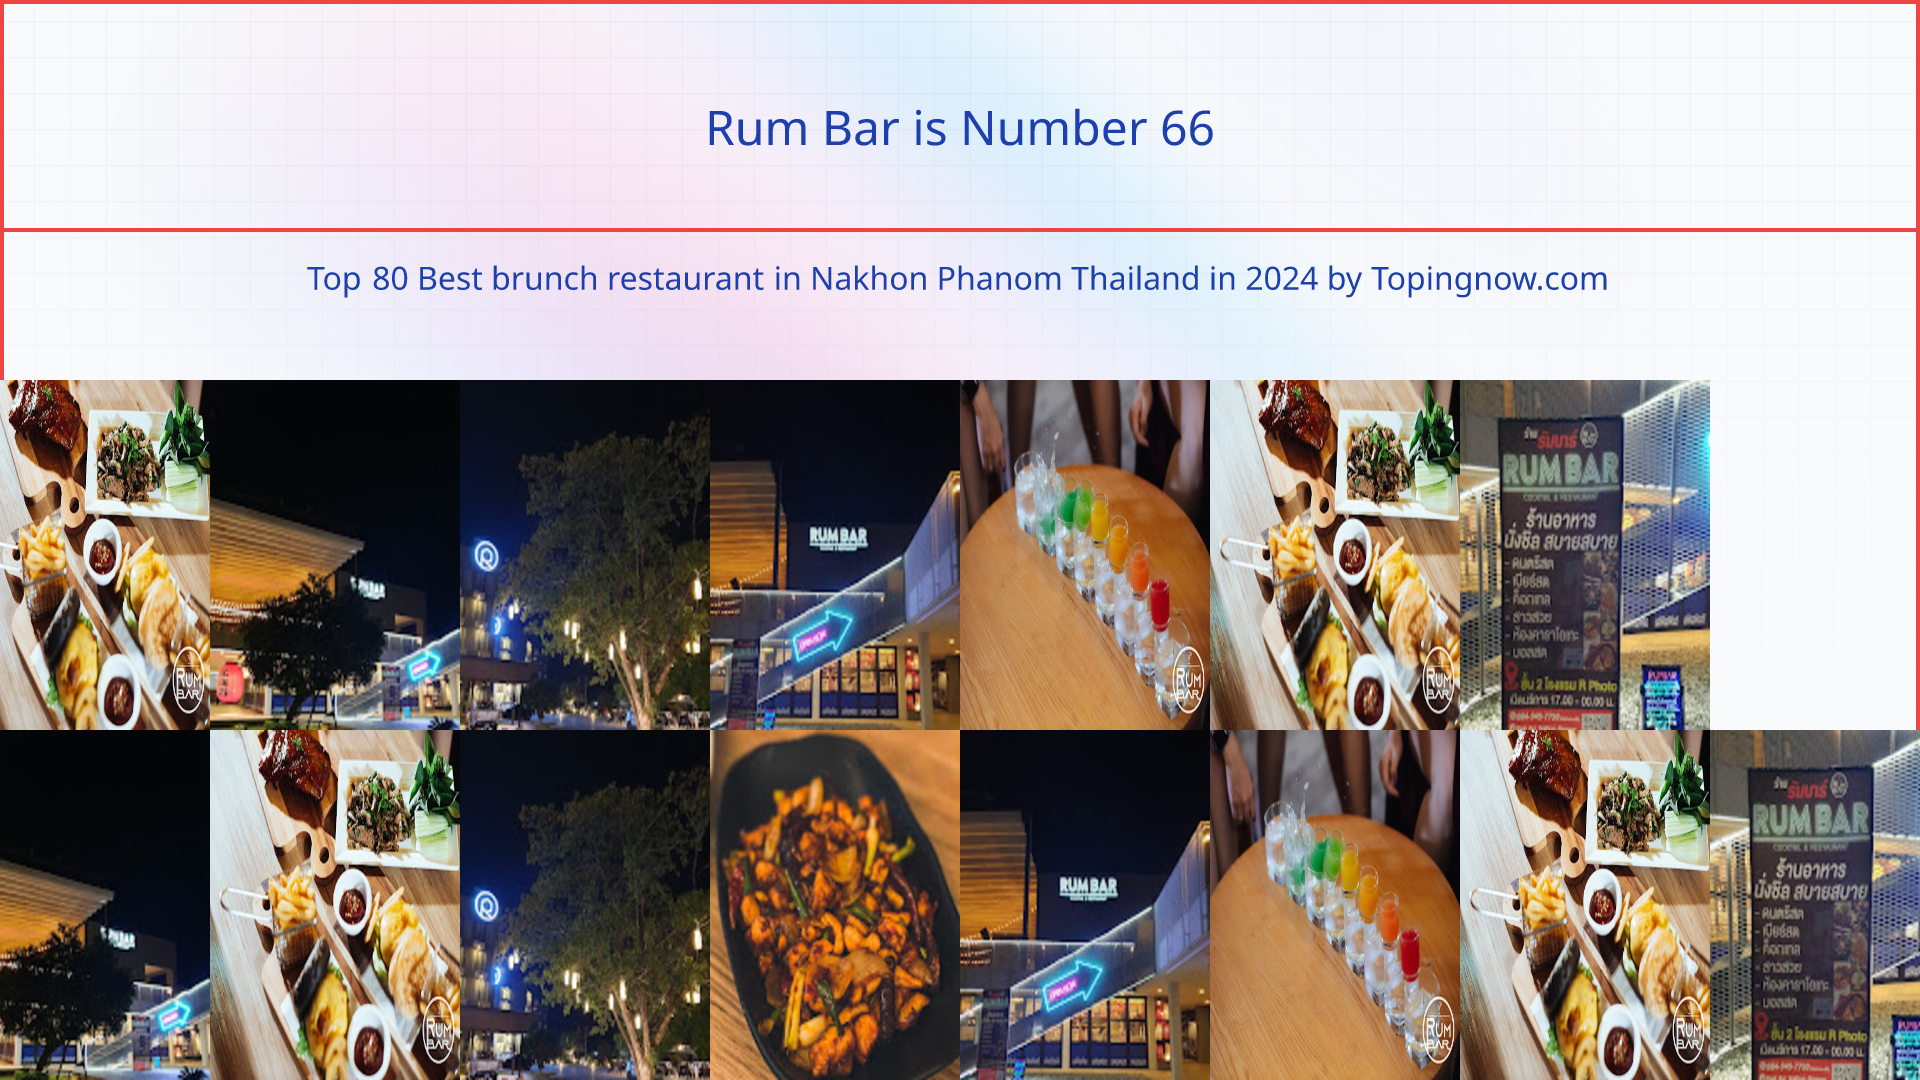 Rum Bar: Top 80 Best brunch restaurant in Nakhon Phanom Thailand in 2024